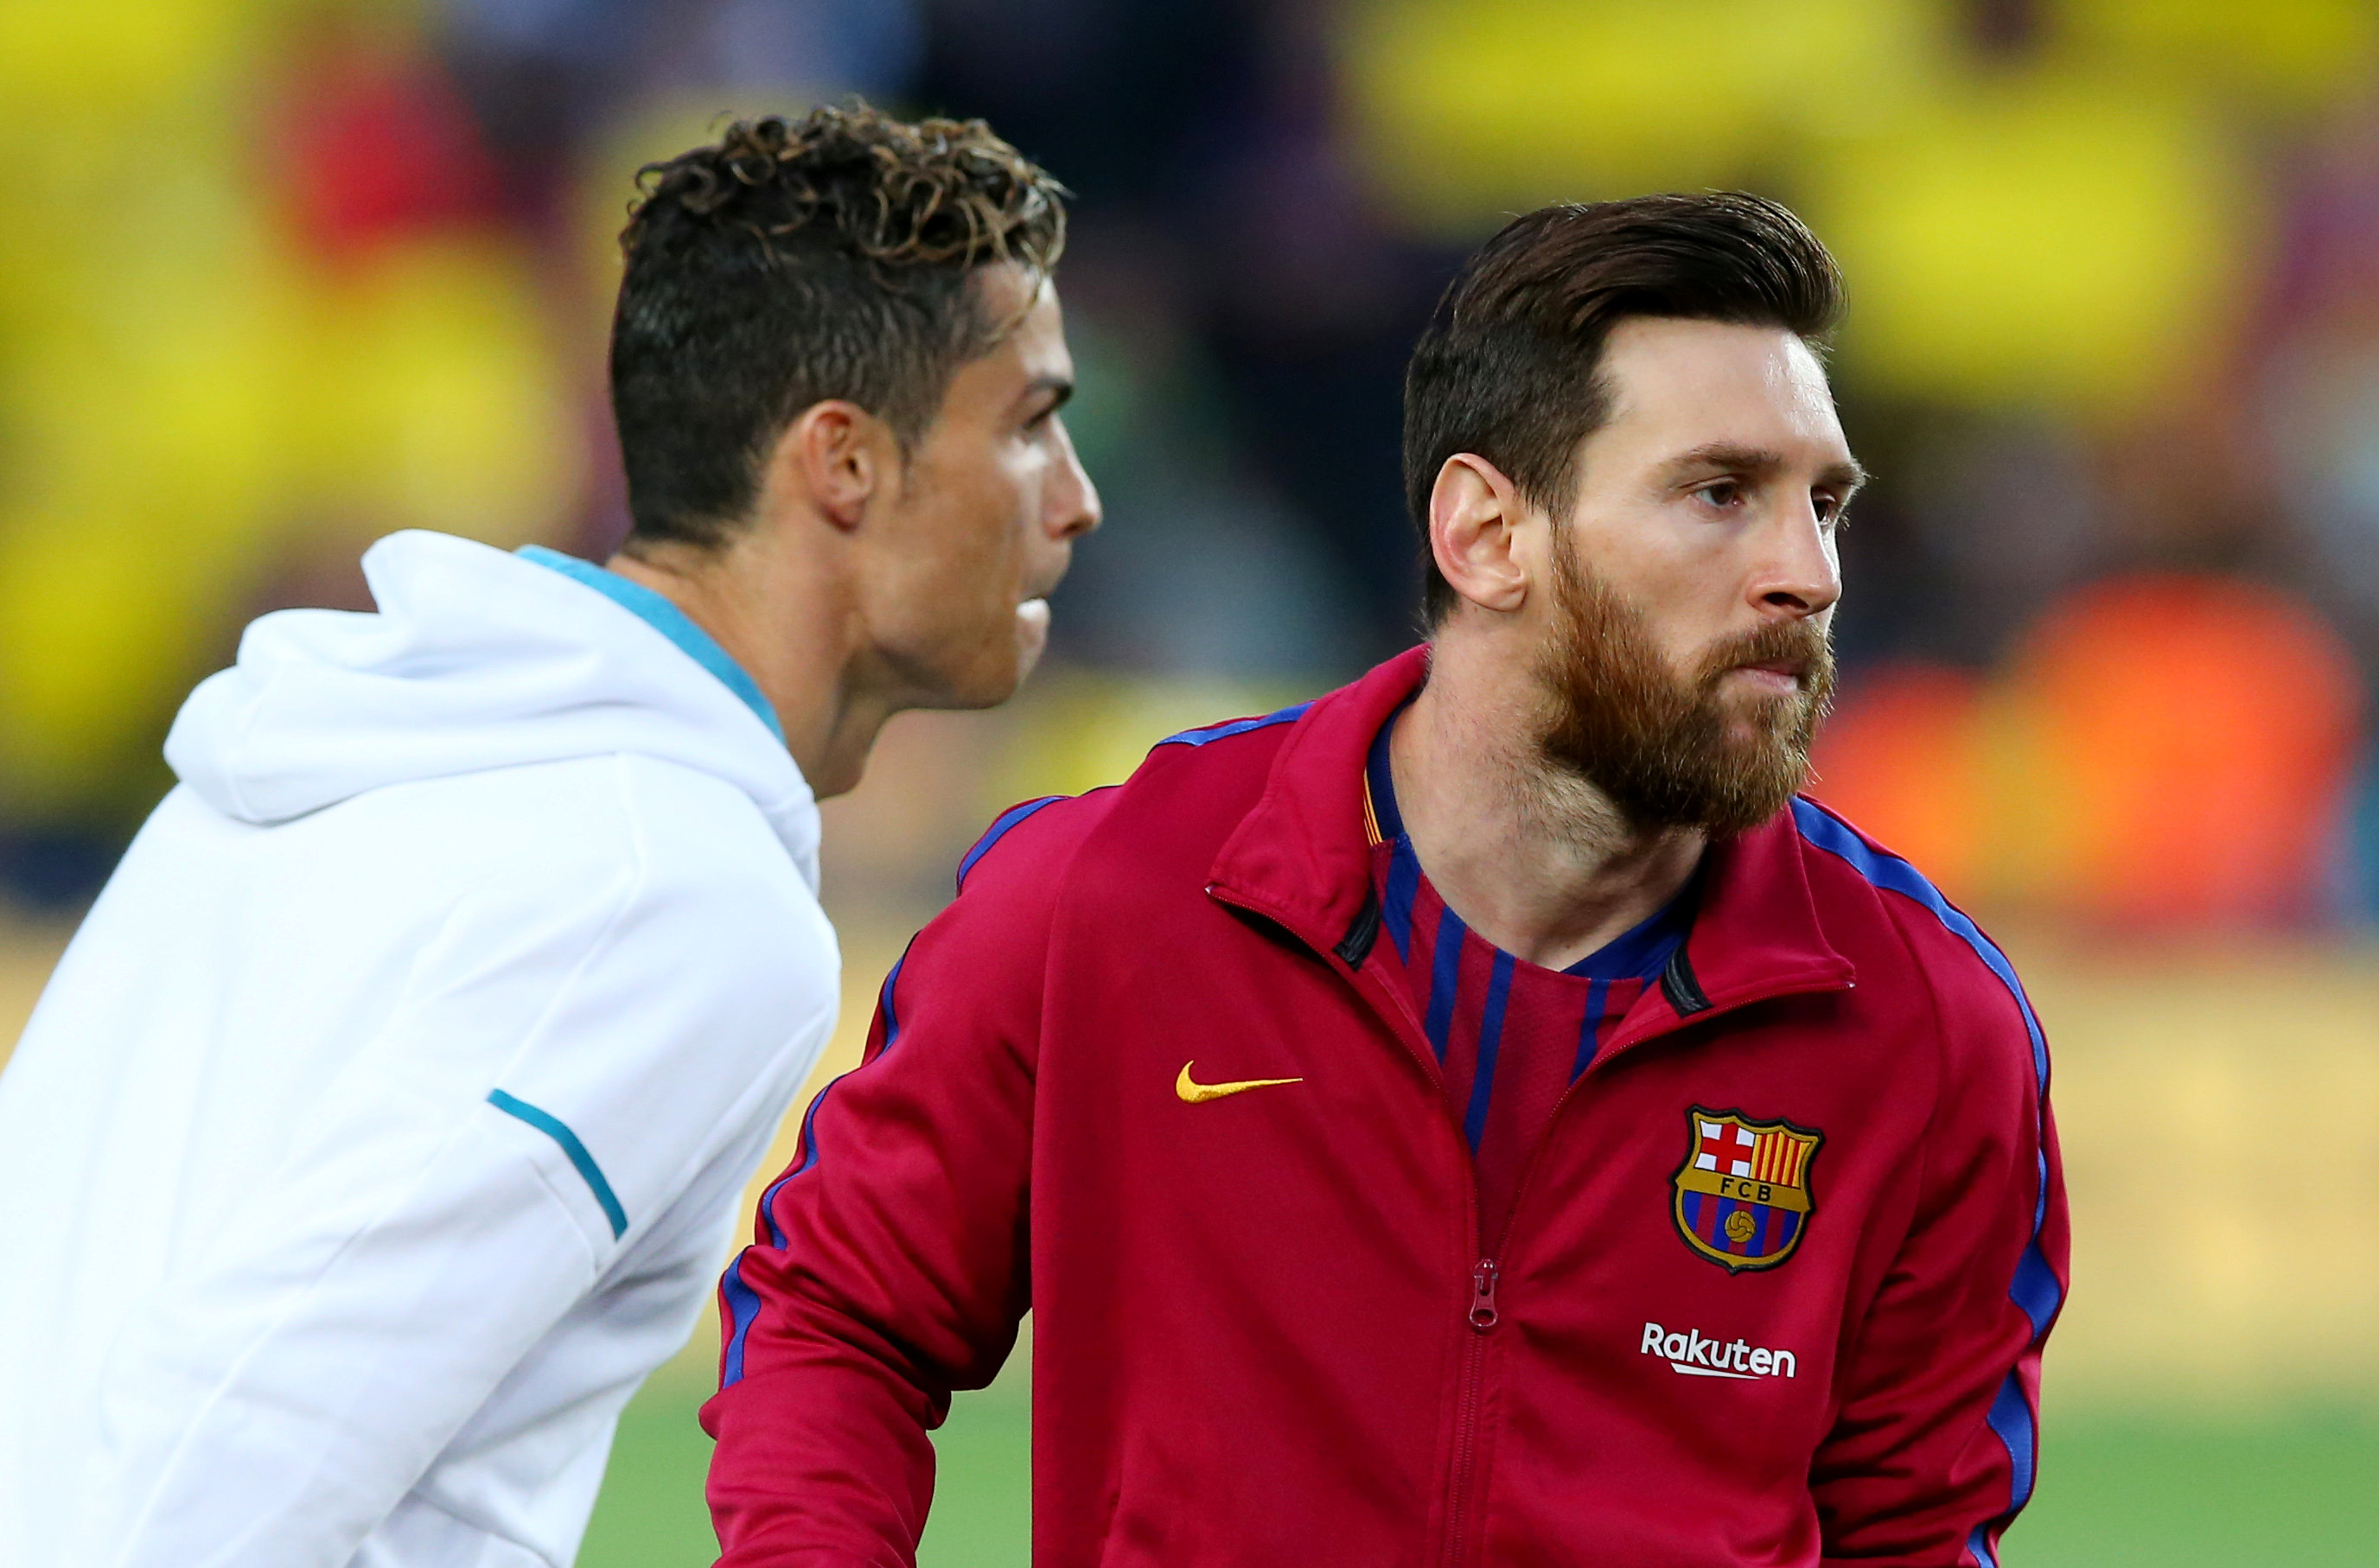 Messi et Ronaldo présents, Ozil 3e, le classement des meilleurs passeurs de la dernière décennie